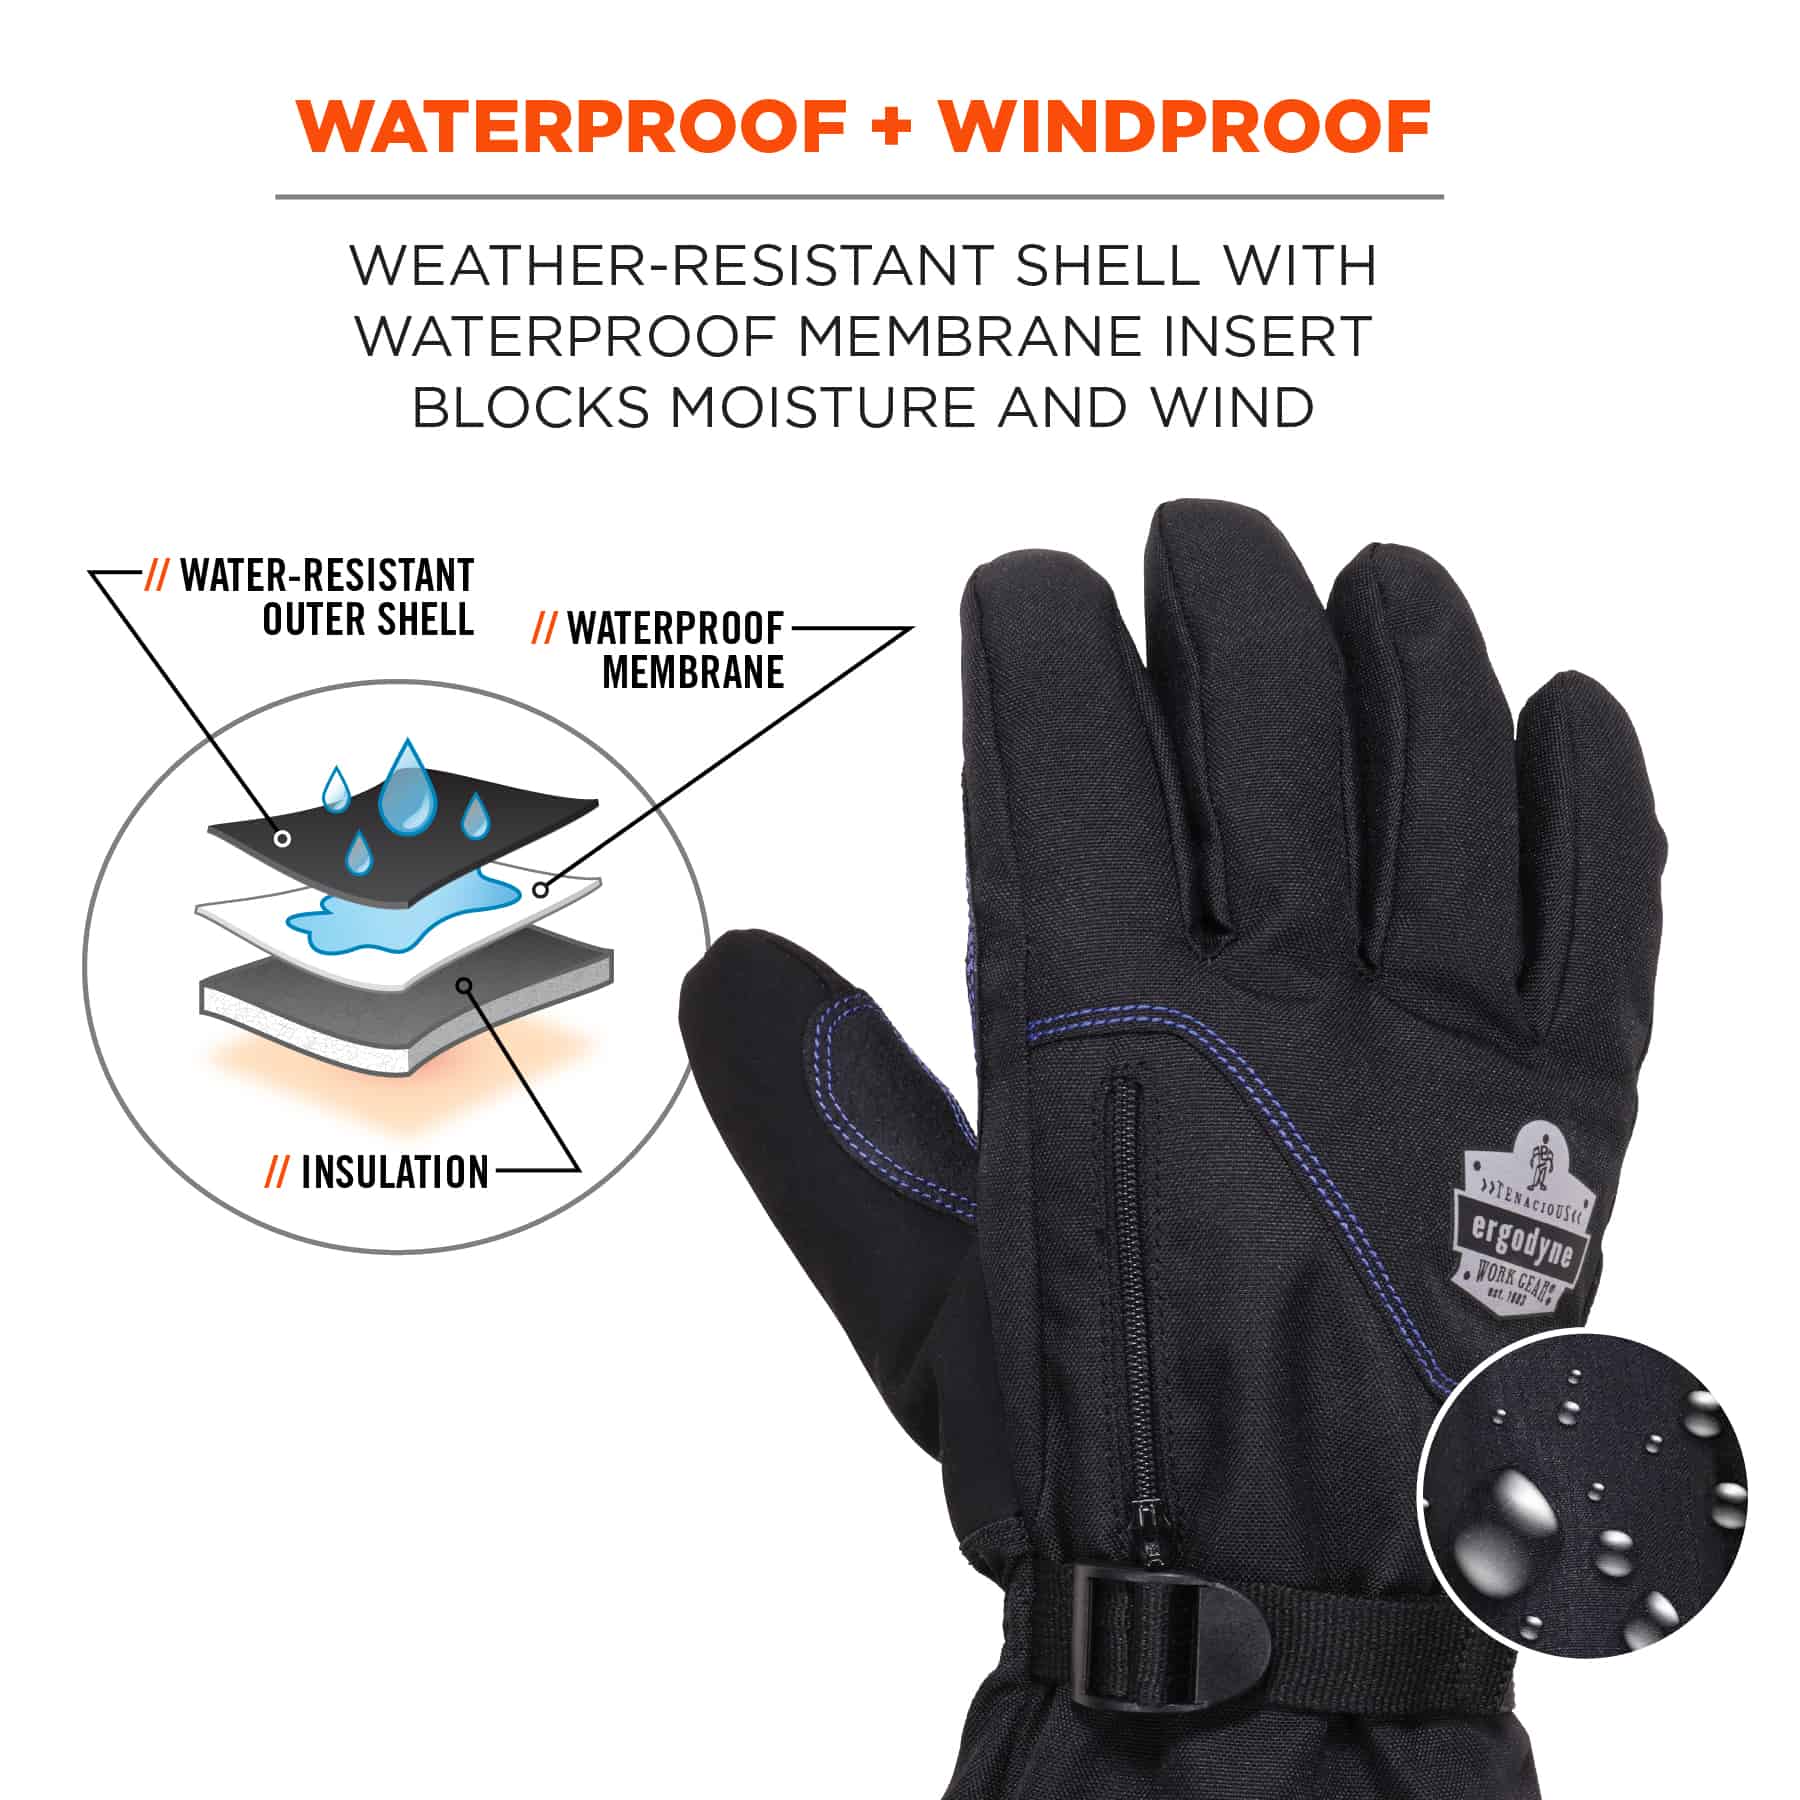 https://www.ergodyne.com/sites/default/files/product-images/17602-825wp-thermal-waterproof-winter-work-gloves-black-waterproof-plus-windproof.jpg